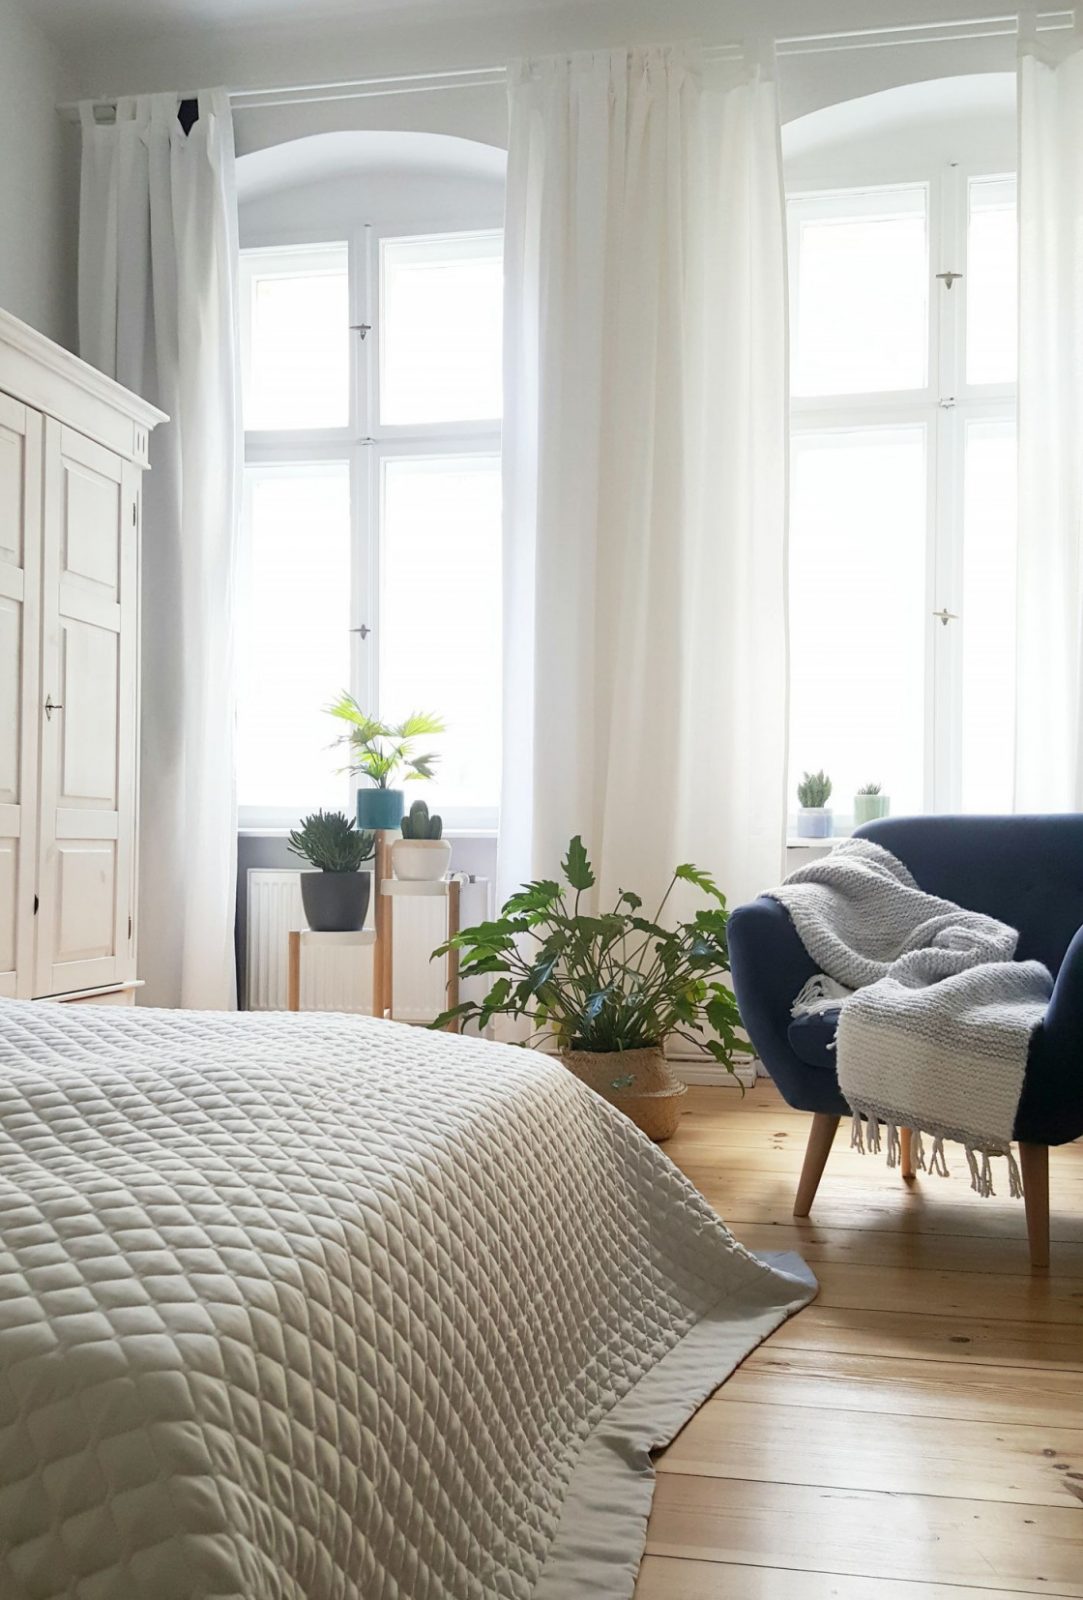 Die Schönsten Ideen Für Vorhänge  Gardinen von Vorhänge Ideen Schlafzimmer Photo